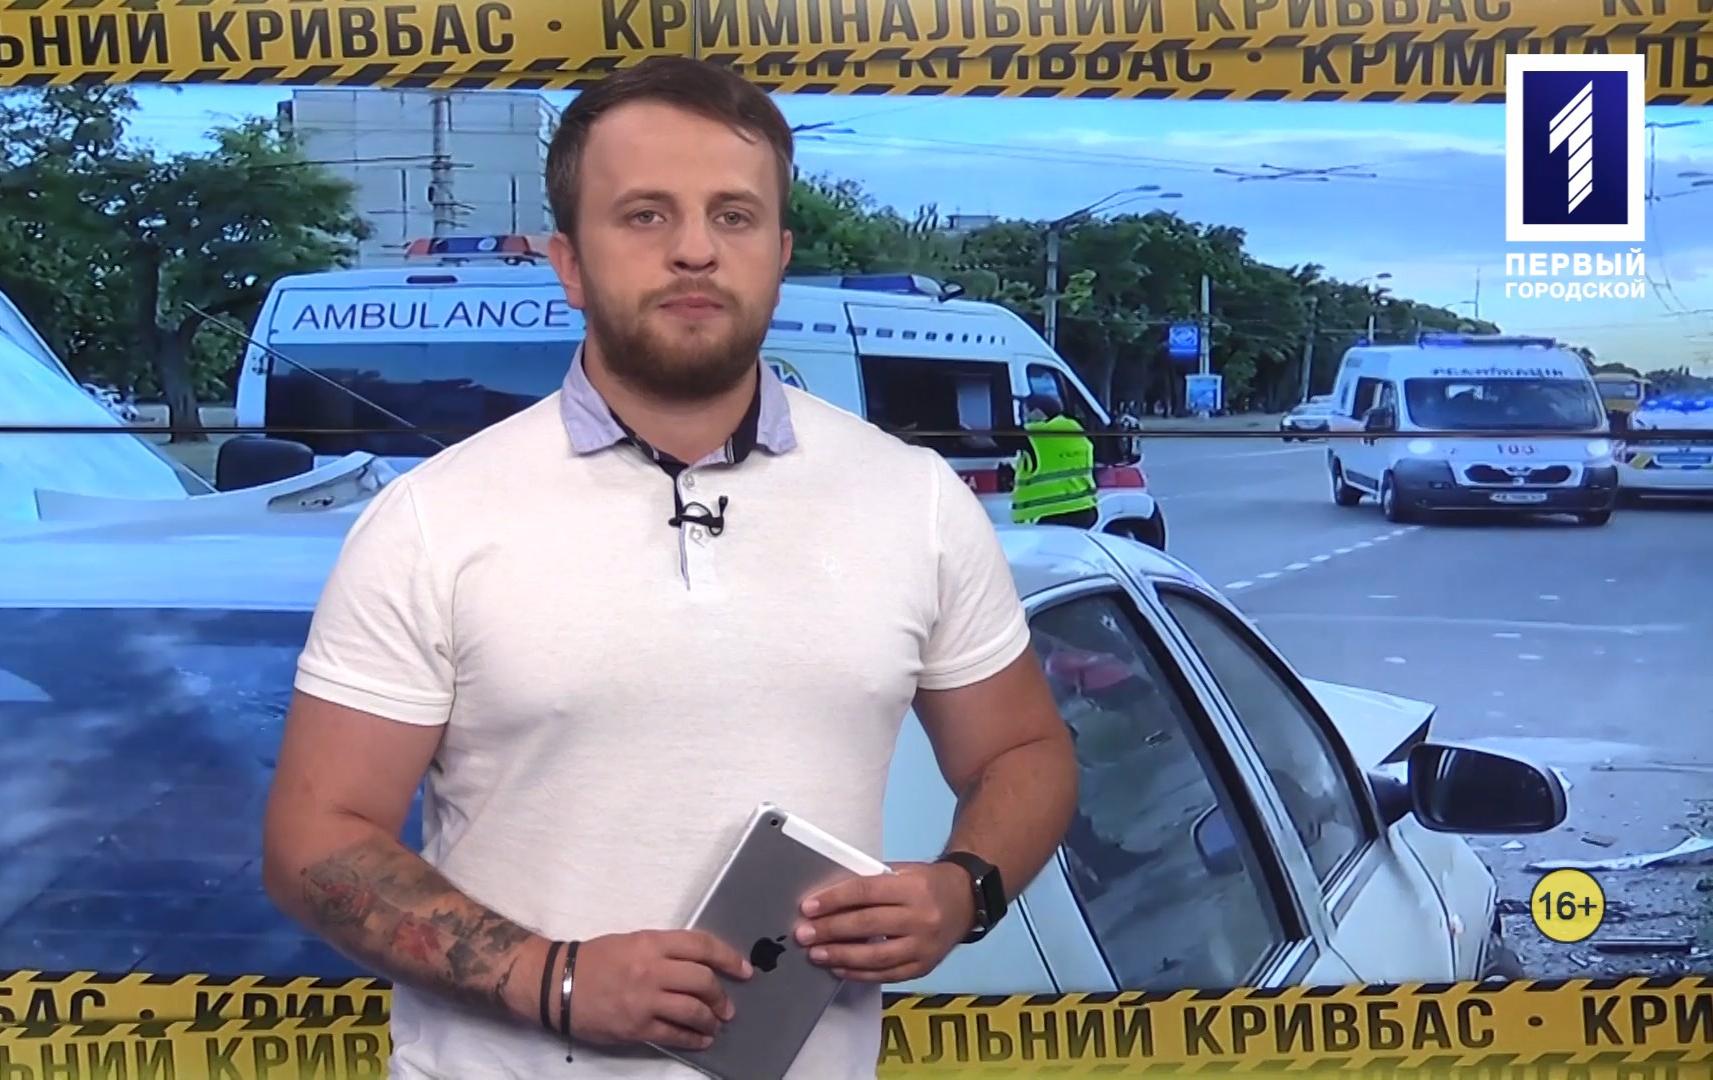 Кримінальний Кривбас: аварія з постраждалими, збили підлітка, погоня зі стріляниною